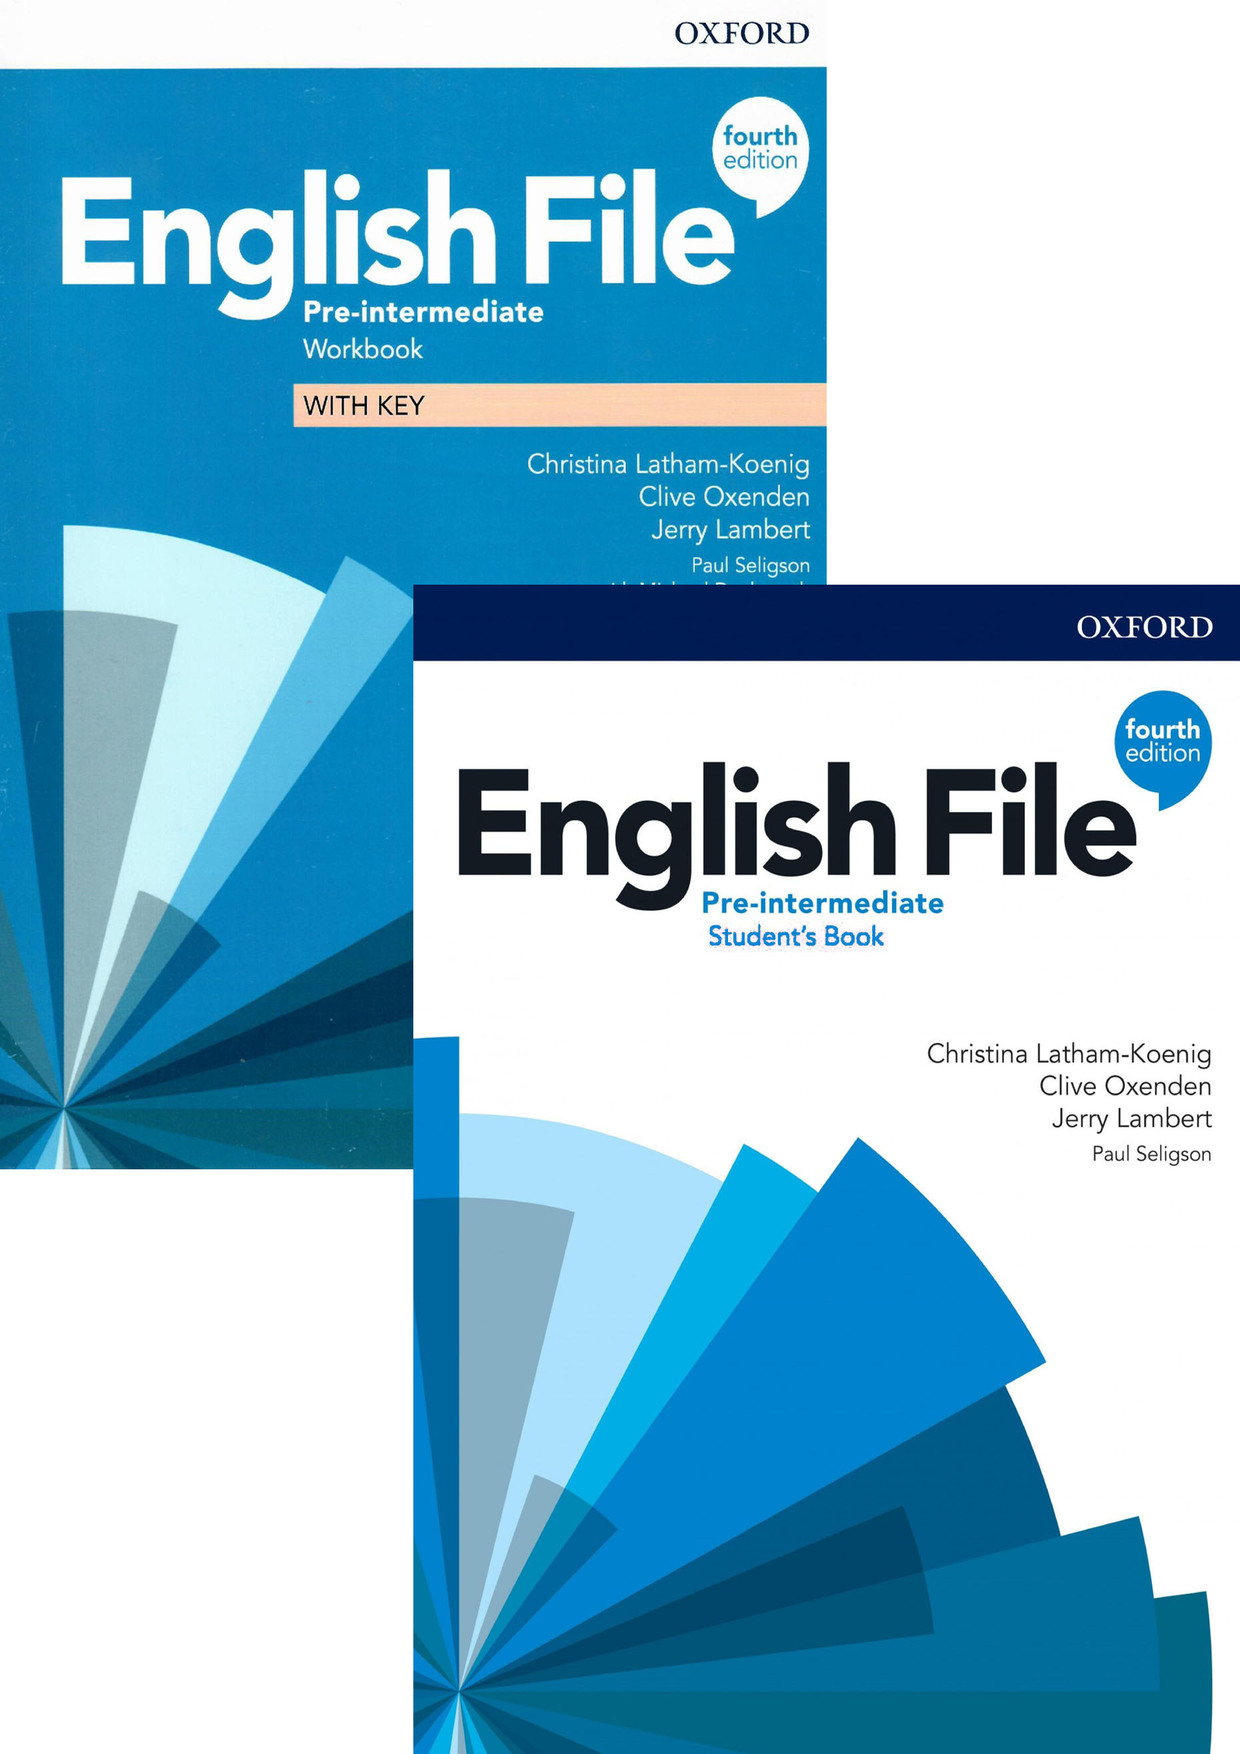 English file intermediate edition. EF pre Intermediate 4th Edition. English file Elementary 4th Edition уровень. English file 4th Edition pre. English file pre-Intermediate 4th.